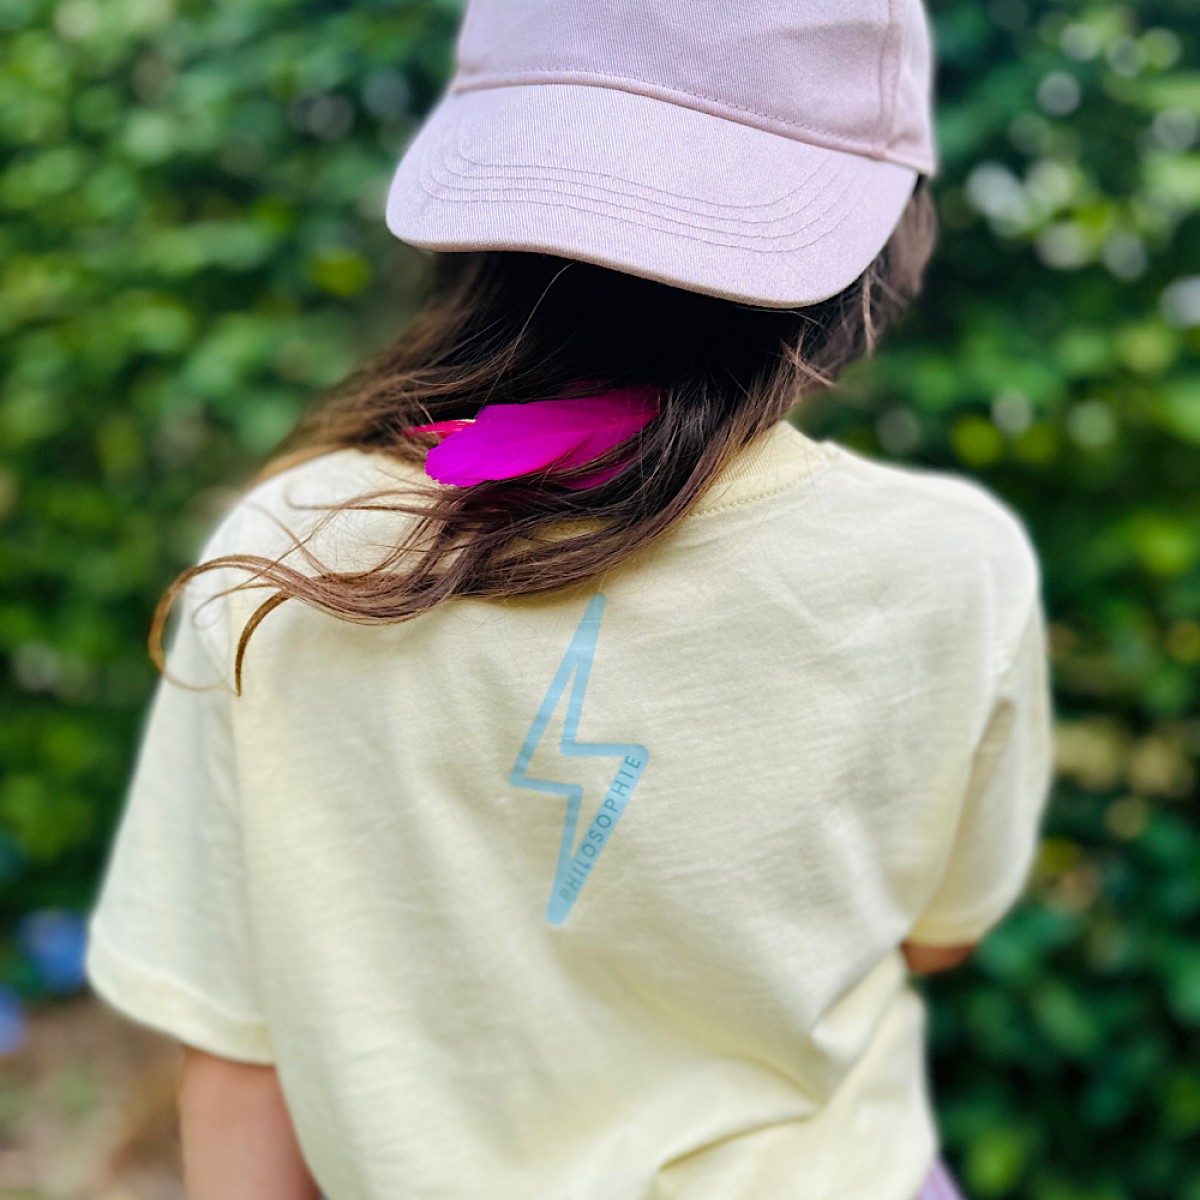 Kids Fun T-Shirt "Sunshine Fizz 2" mit Zwei Austauschbaren Patches | PHILOSOPHIE